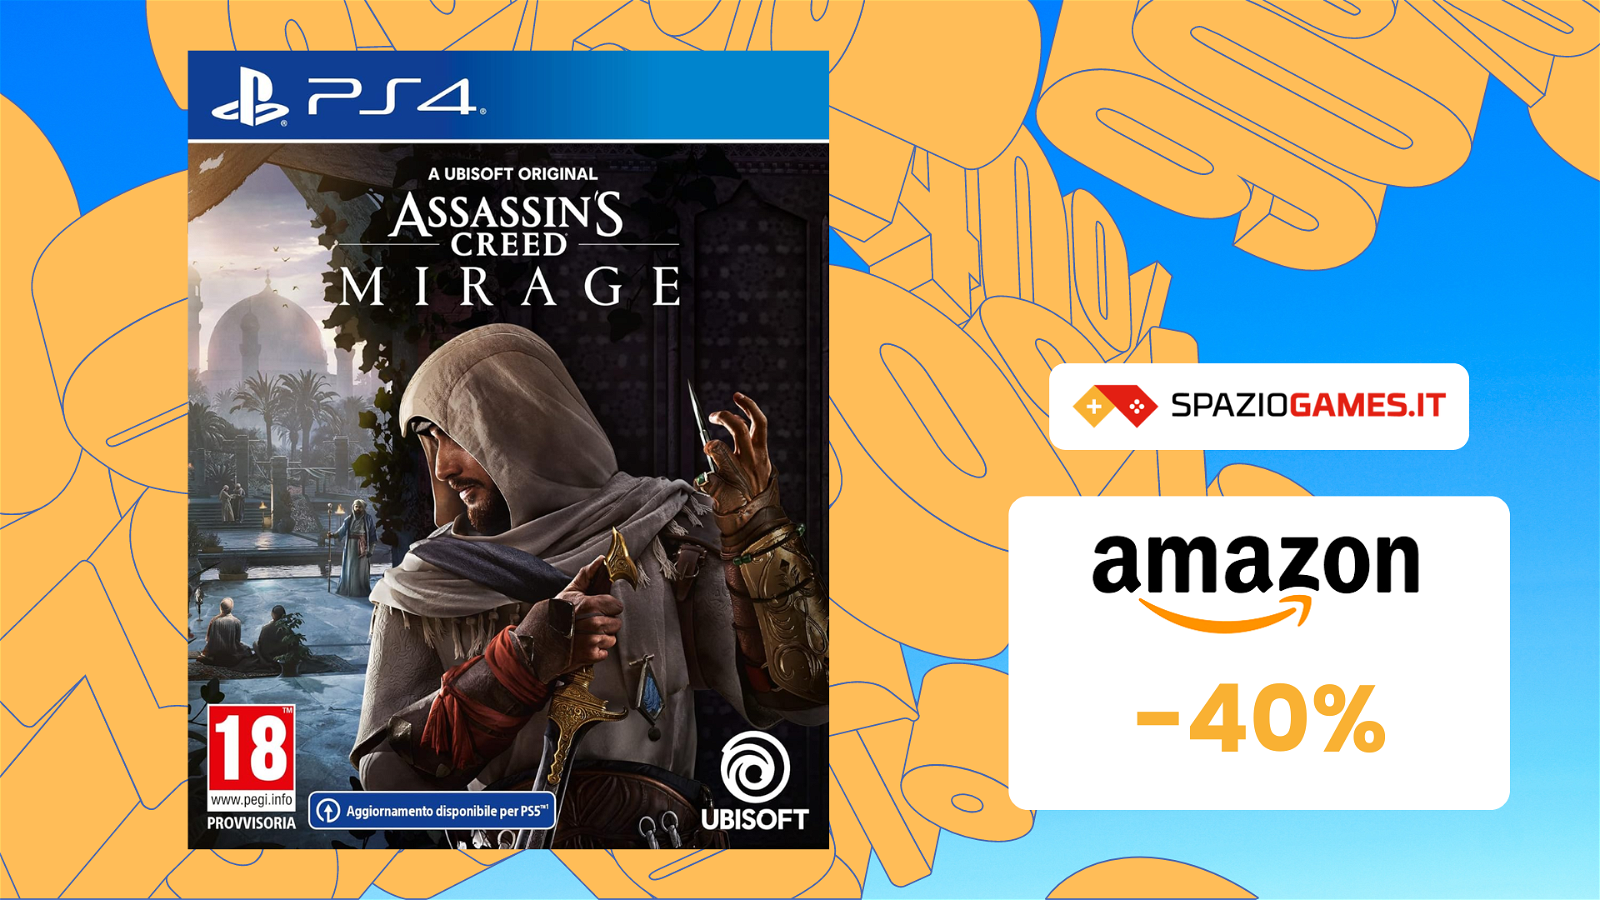 CHE OFFERTA! Assassin's Creed Mirage PS4 oggi è SCONTATO del 40%!